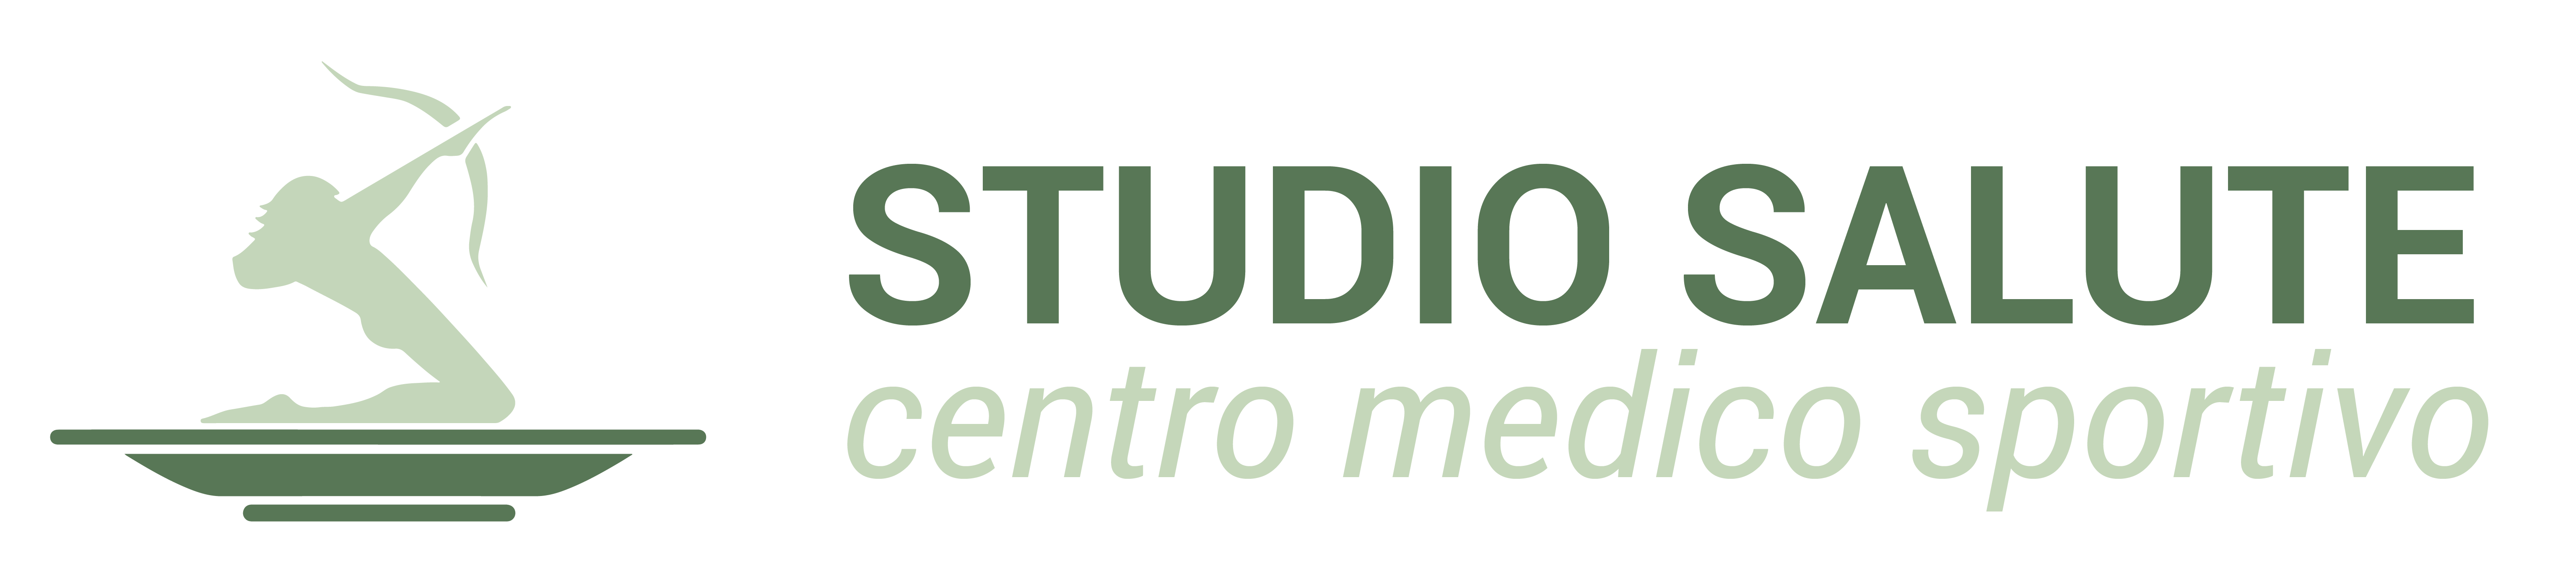 Centro Medico Sportivo – Studio Salute